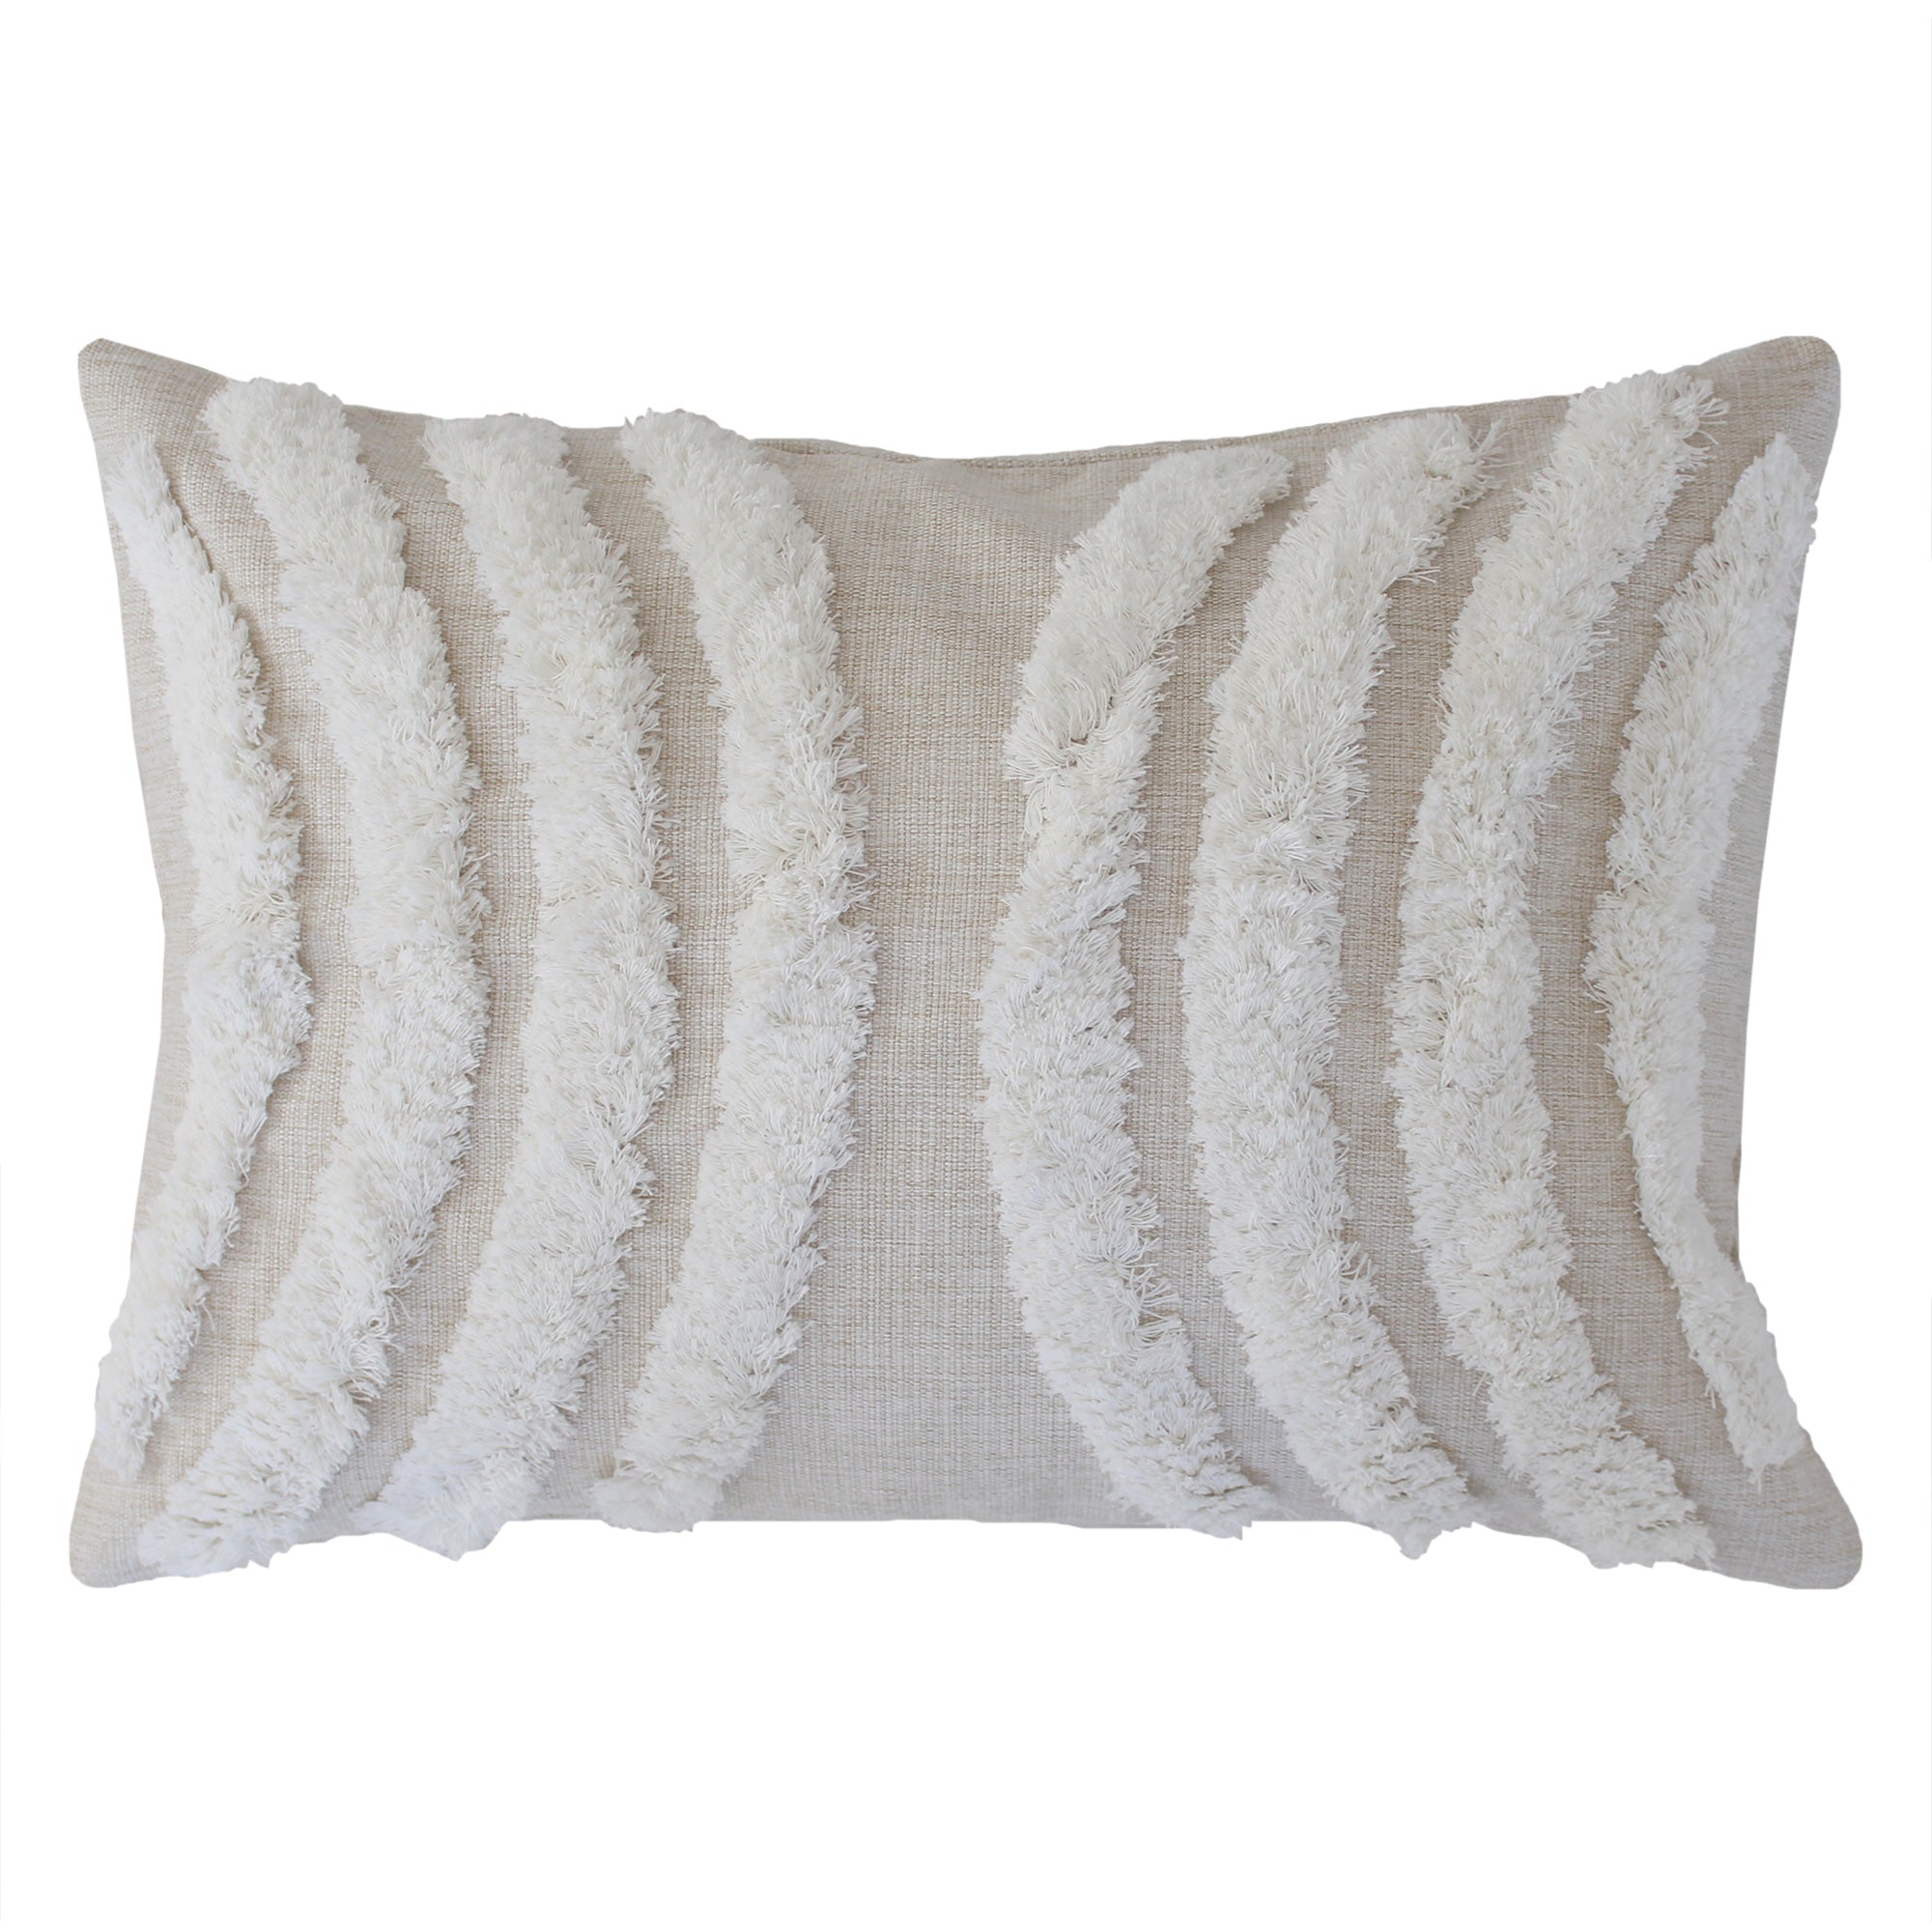 cushion-cover-boho-textured-single-sided-moon-lover-35cm-x-50cm